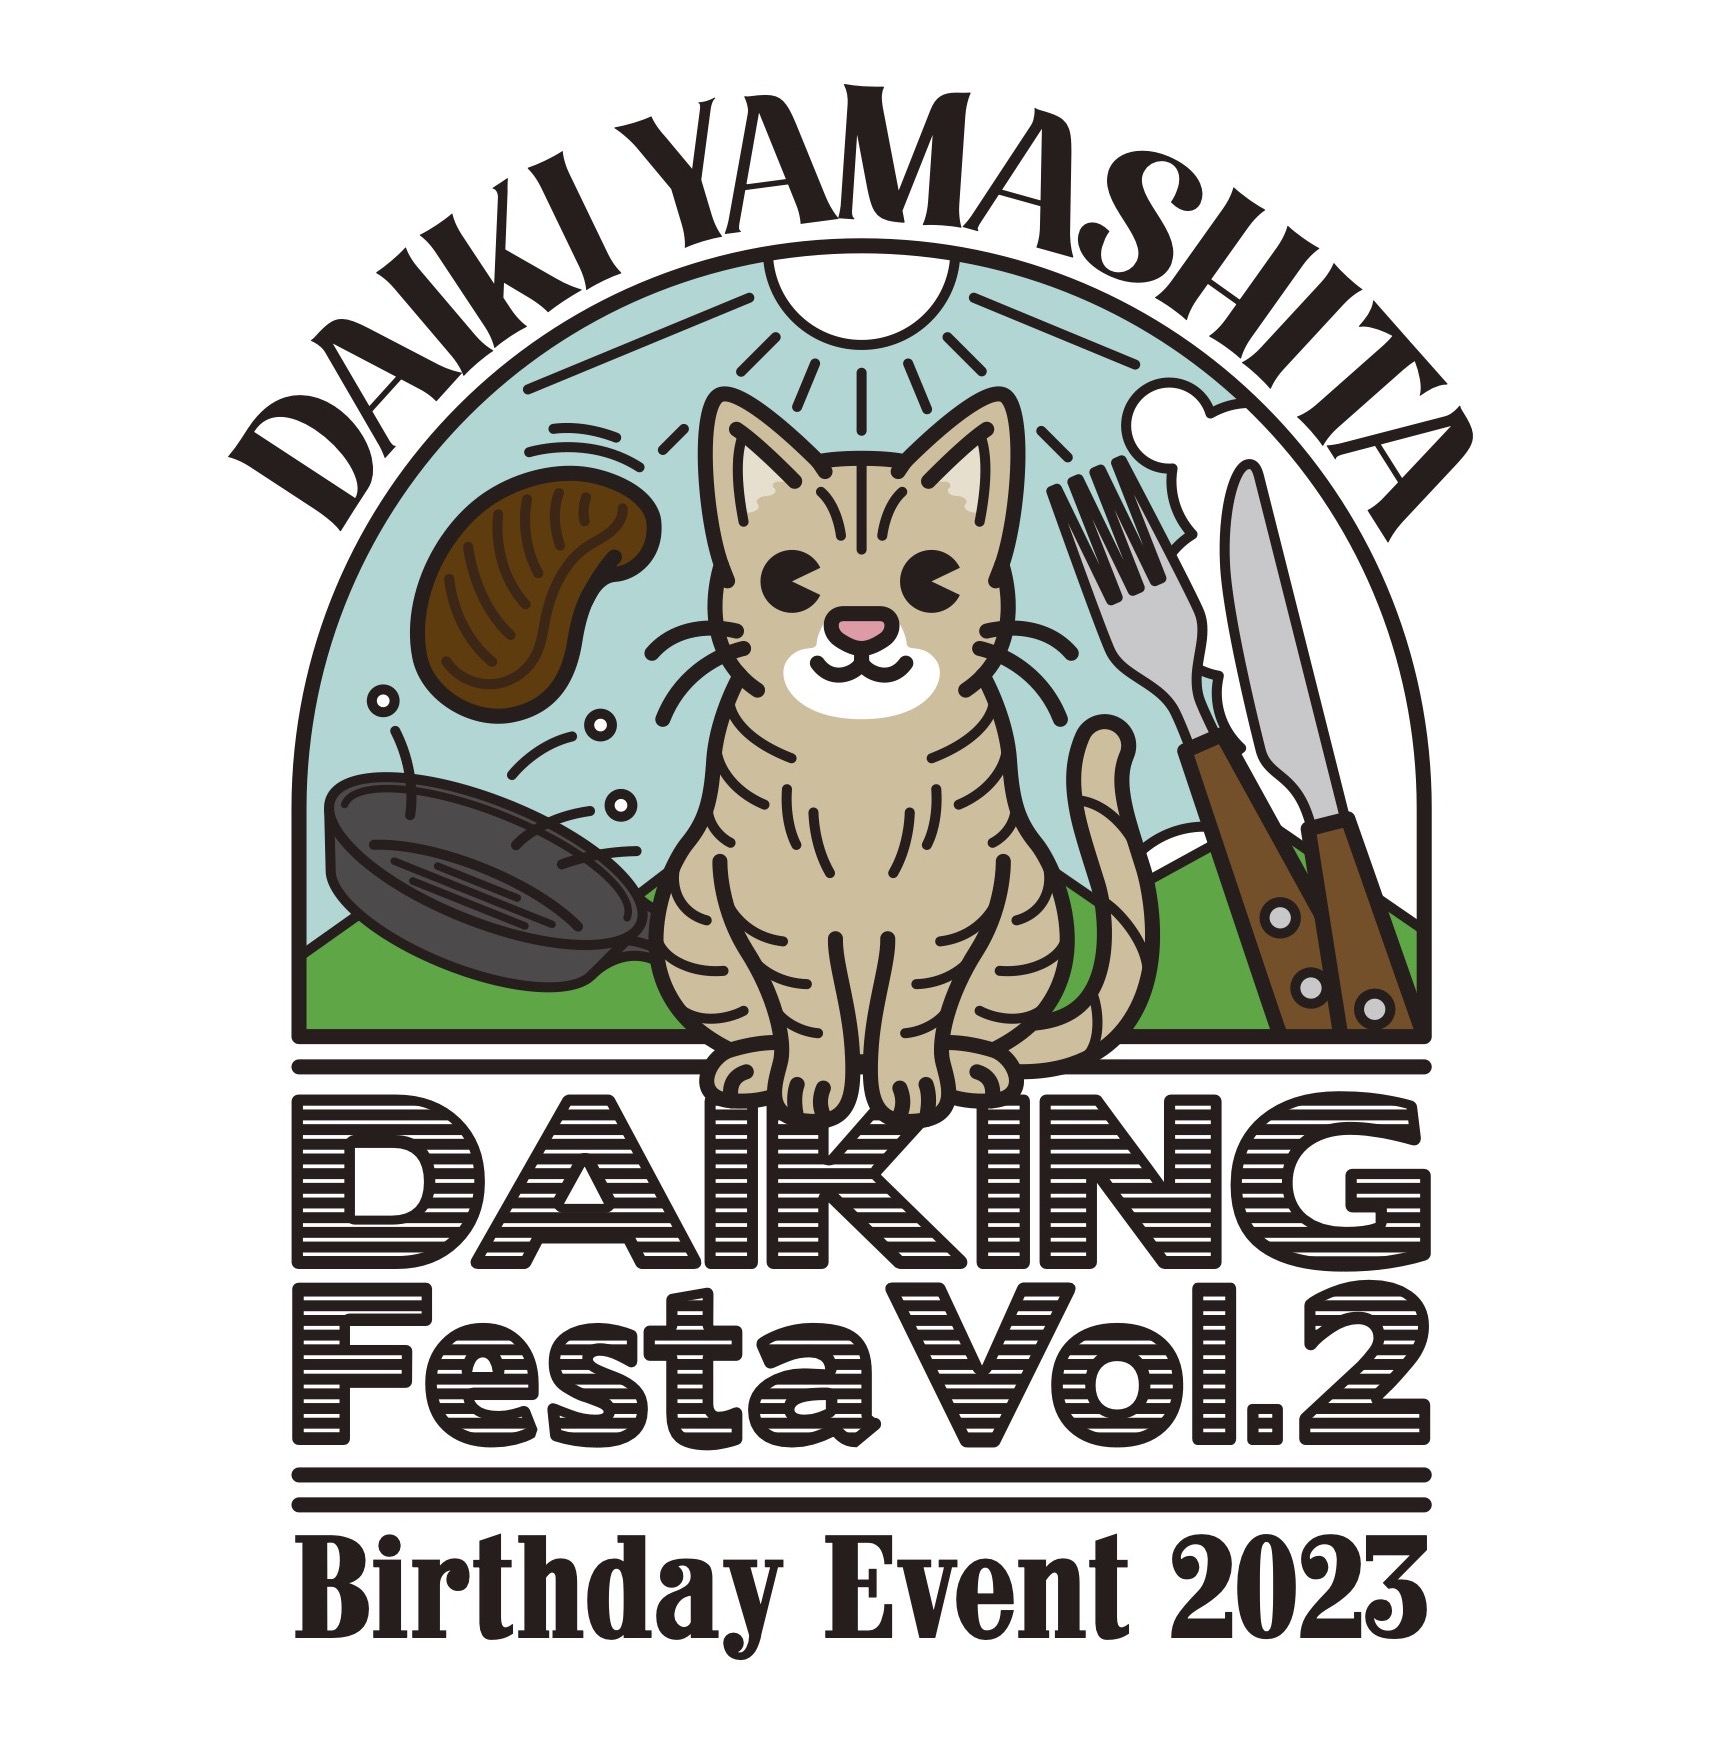 Daiki Yamashita Birthday Event 2023 DAIKING Festa Vol.2のゲスト、MC、グッズ情報を公開！